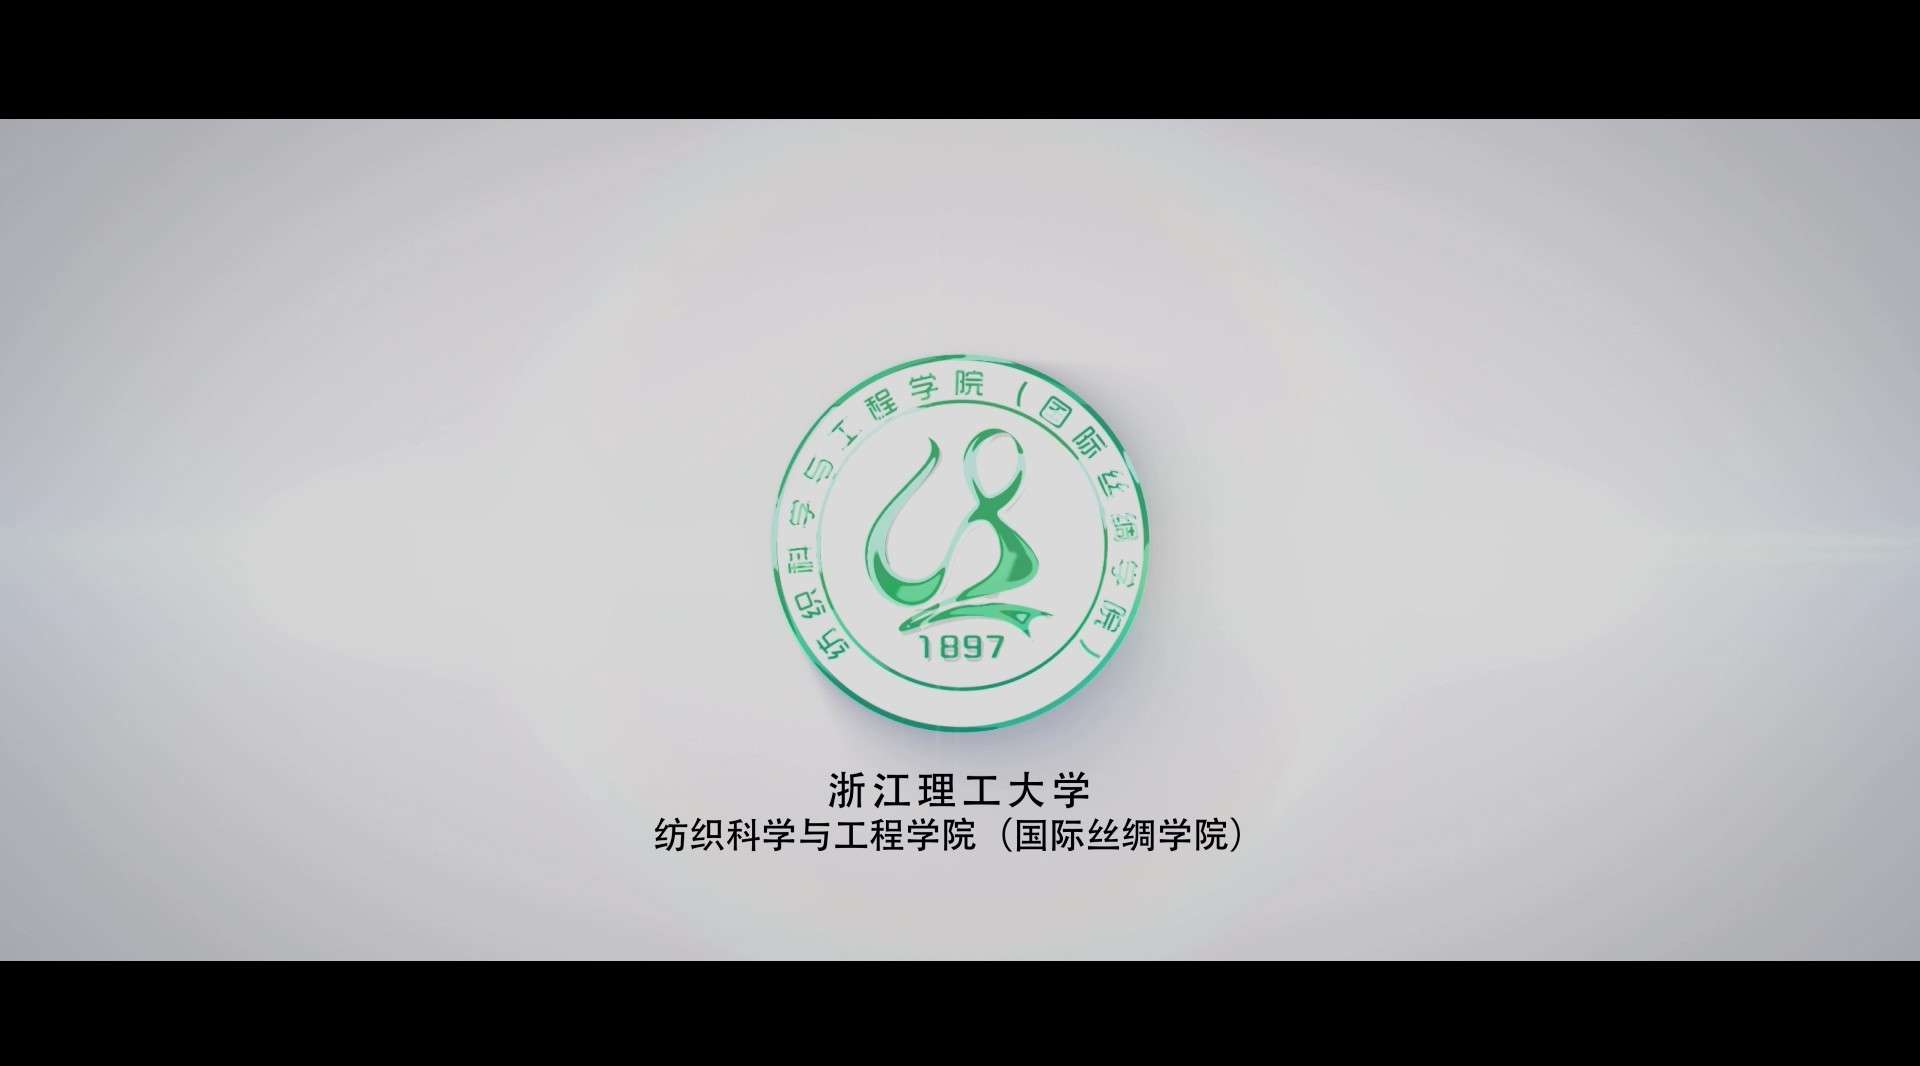 浙江理工大学纺织科学与工程学院（国际丝绸学院）宣传片